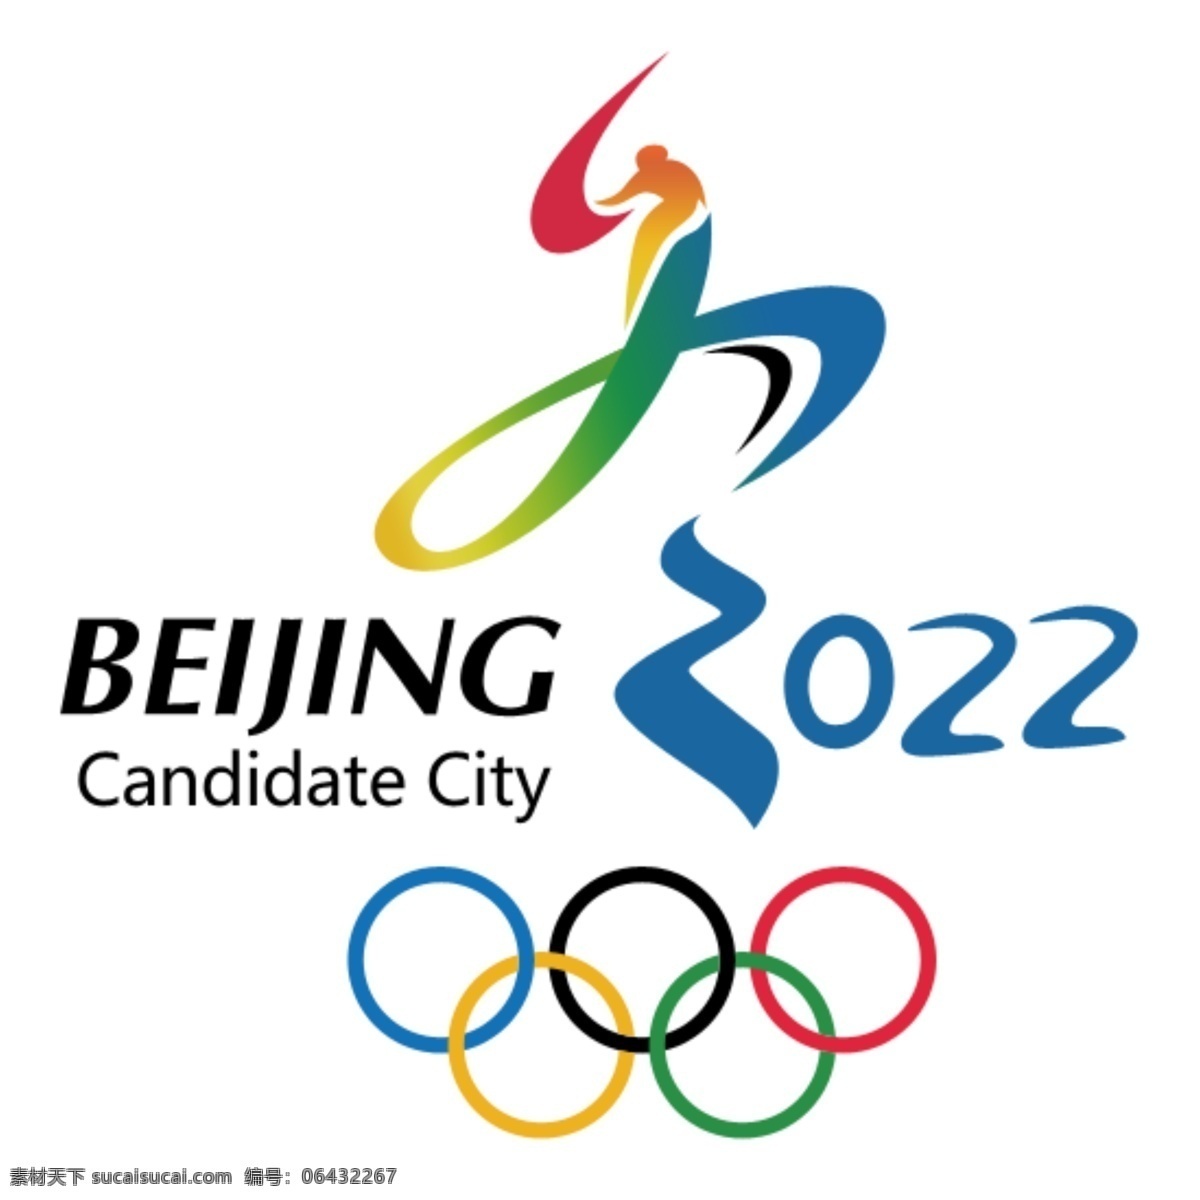 2022 北京 冬奥会 logo 矢量 冬季奥运会 图标 标志图标 公共标识标志